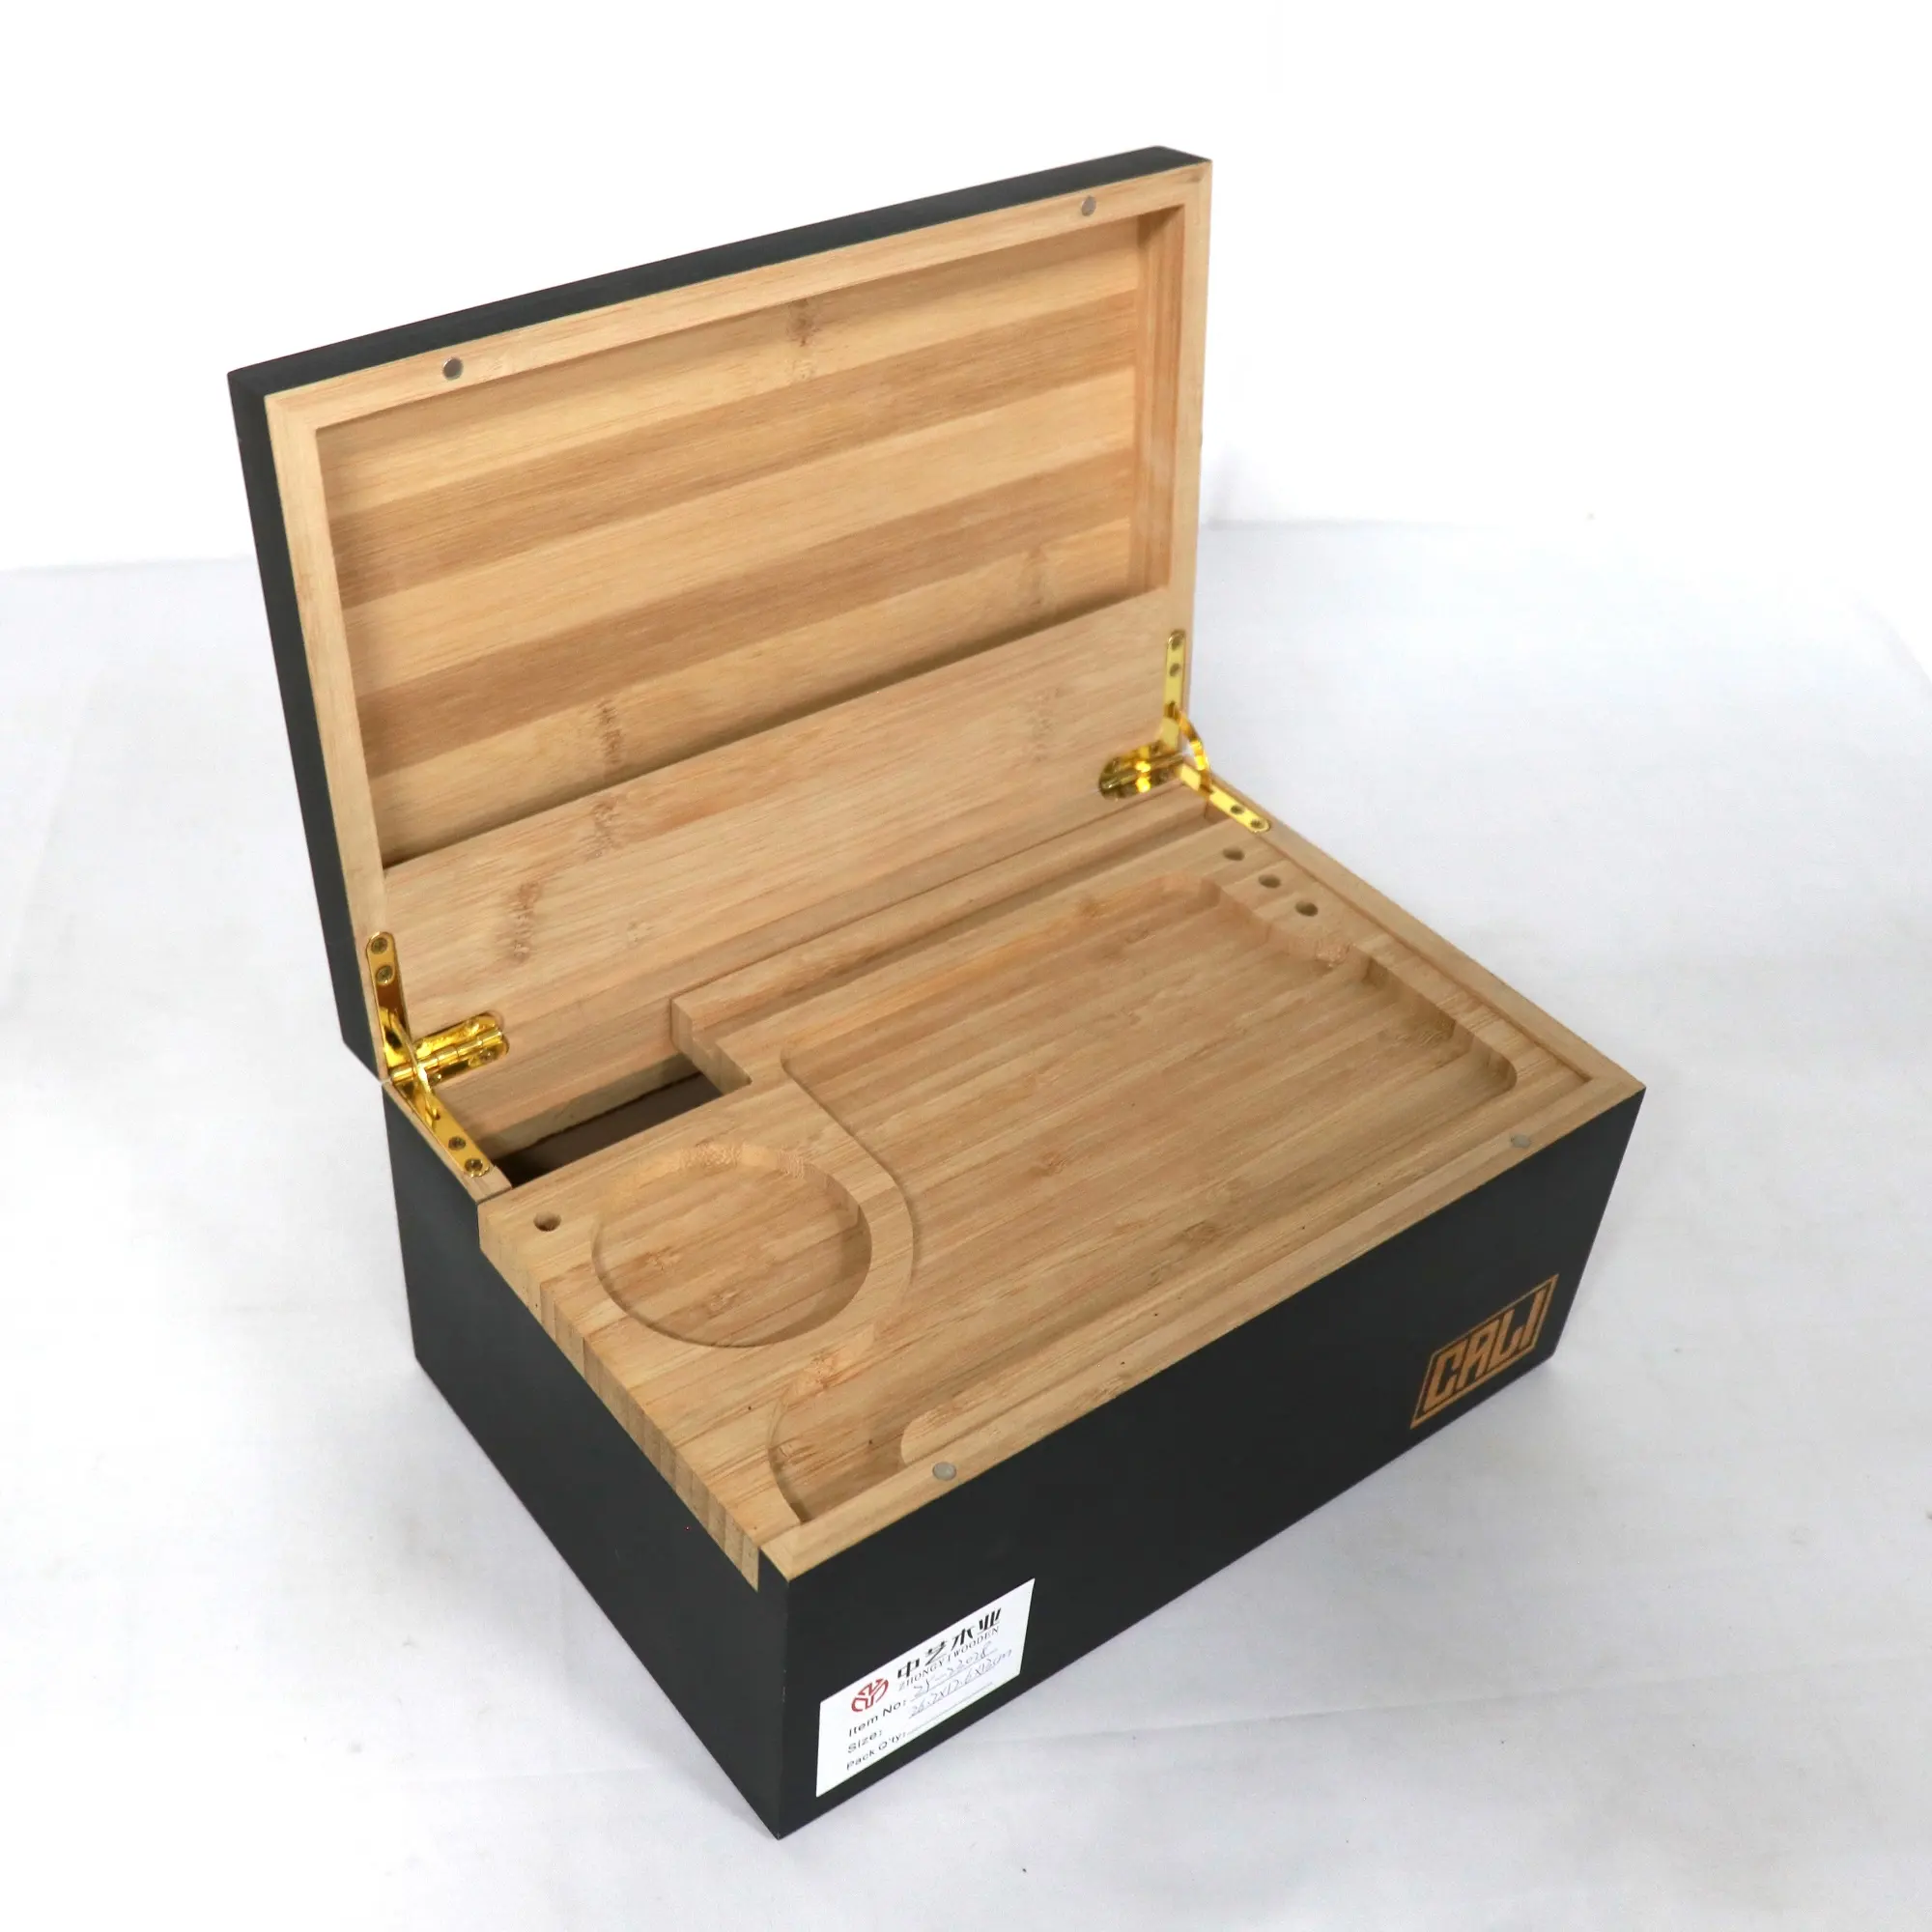 OEM kayu dekoratif kotak penyimpanan mewah merokok kotak penyimpanan bambu dengan nampan bergulir kotak kayu dengan tutup berengsel